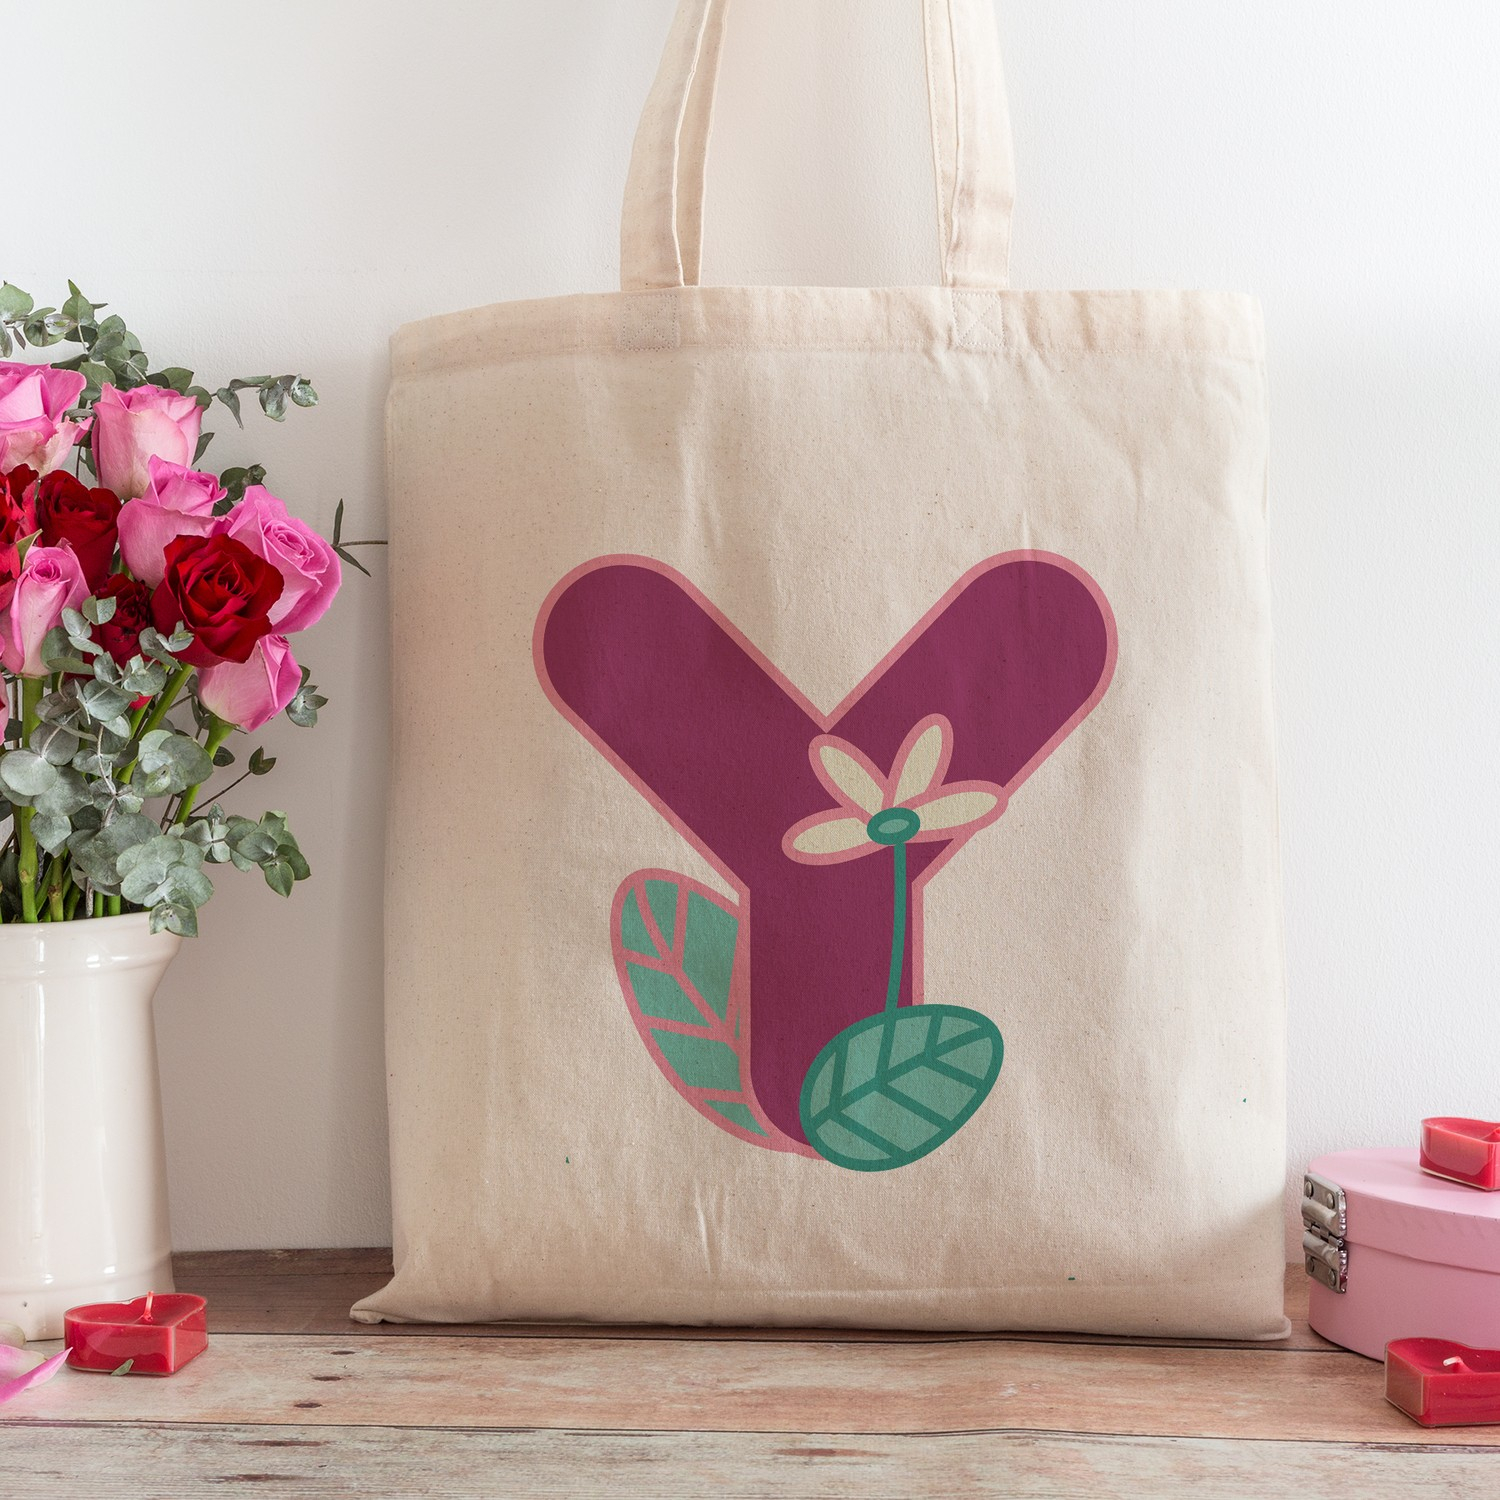 Пляжная сумка для покупок с дизайном буквы Y из интернет-магазина подарочных сертификатов